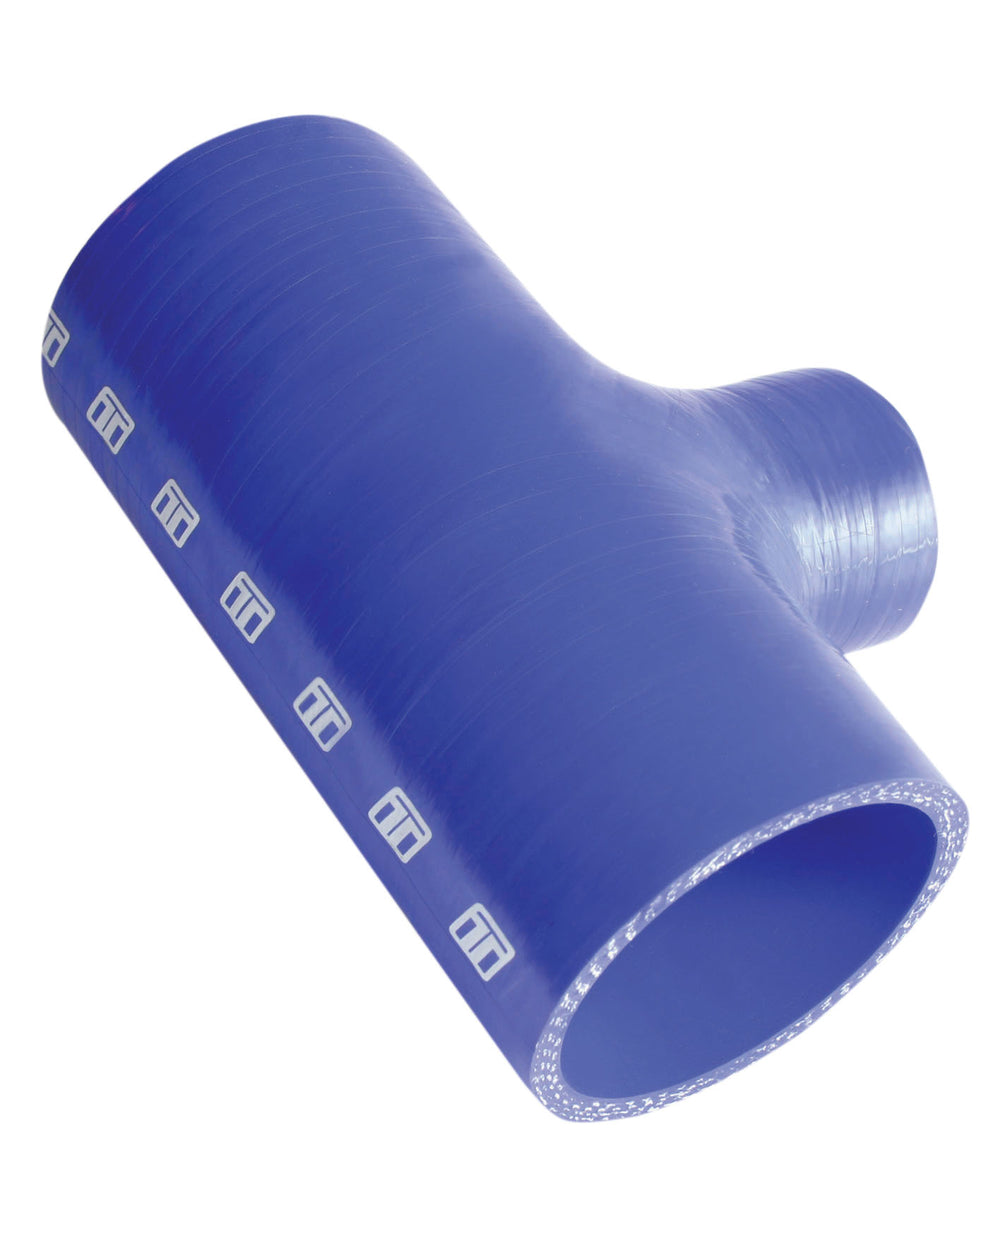 Turbosmart Intercooler Hose Kit (Hose Tee 2.75" ID 1.5" spout - Blue)